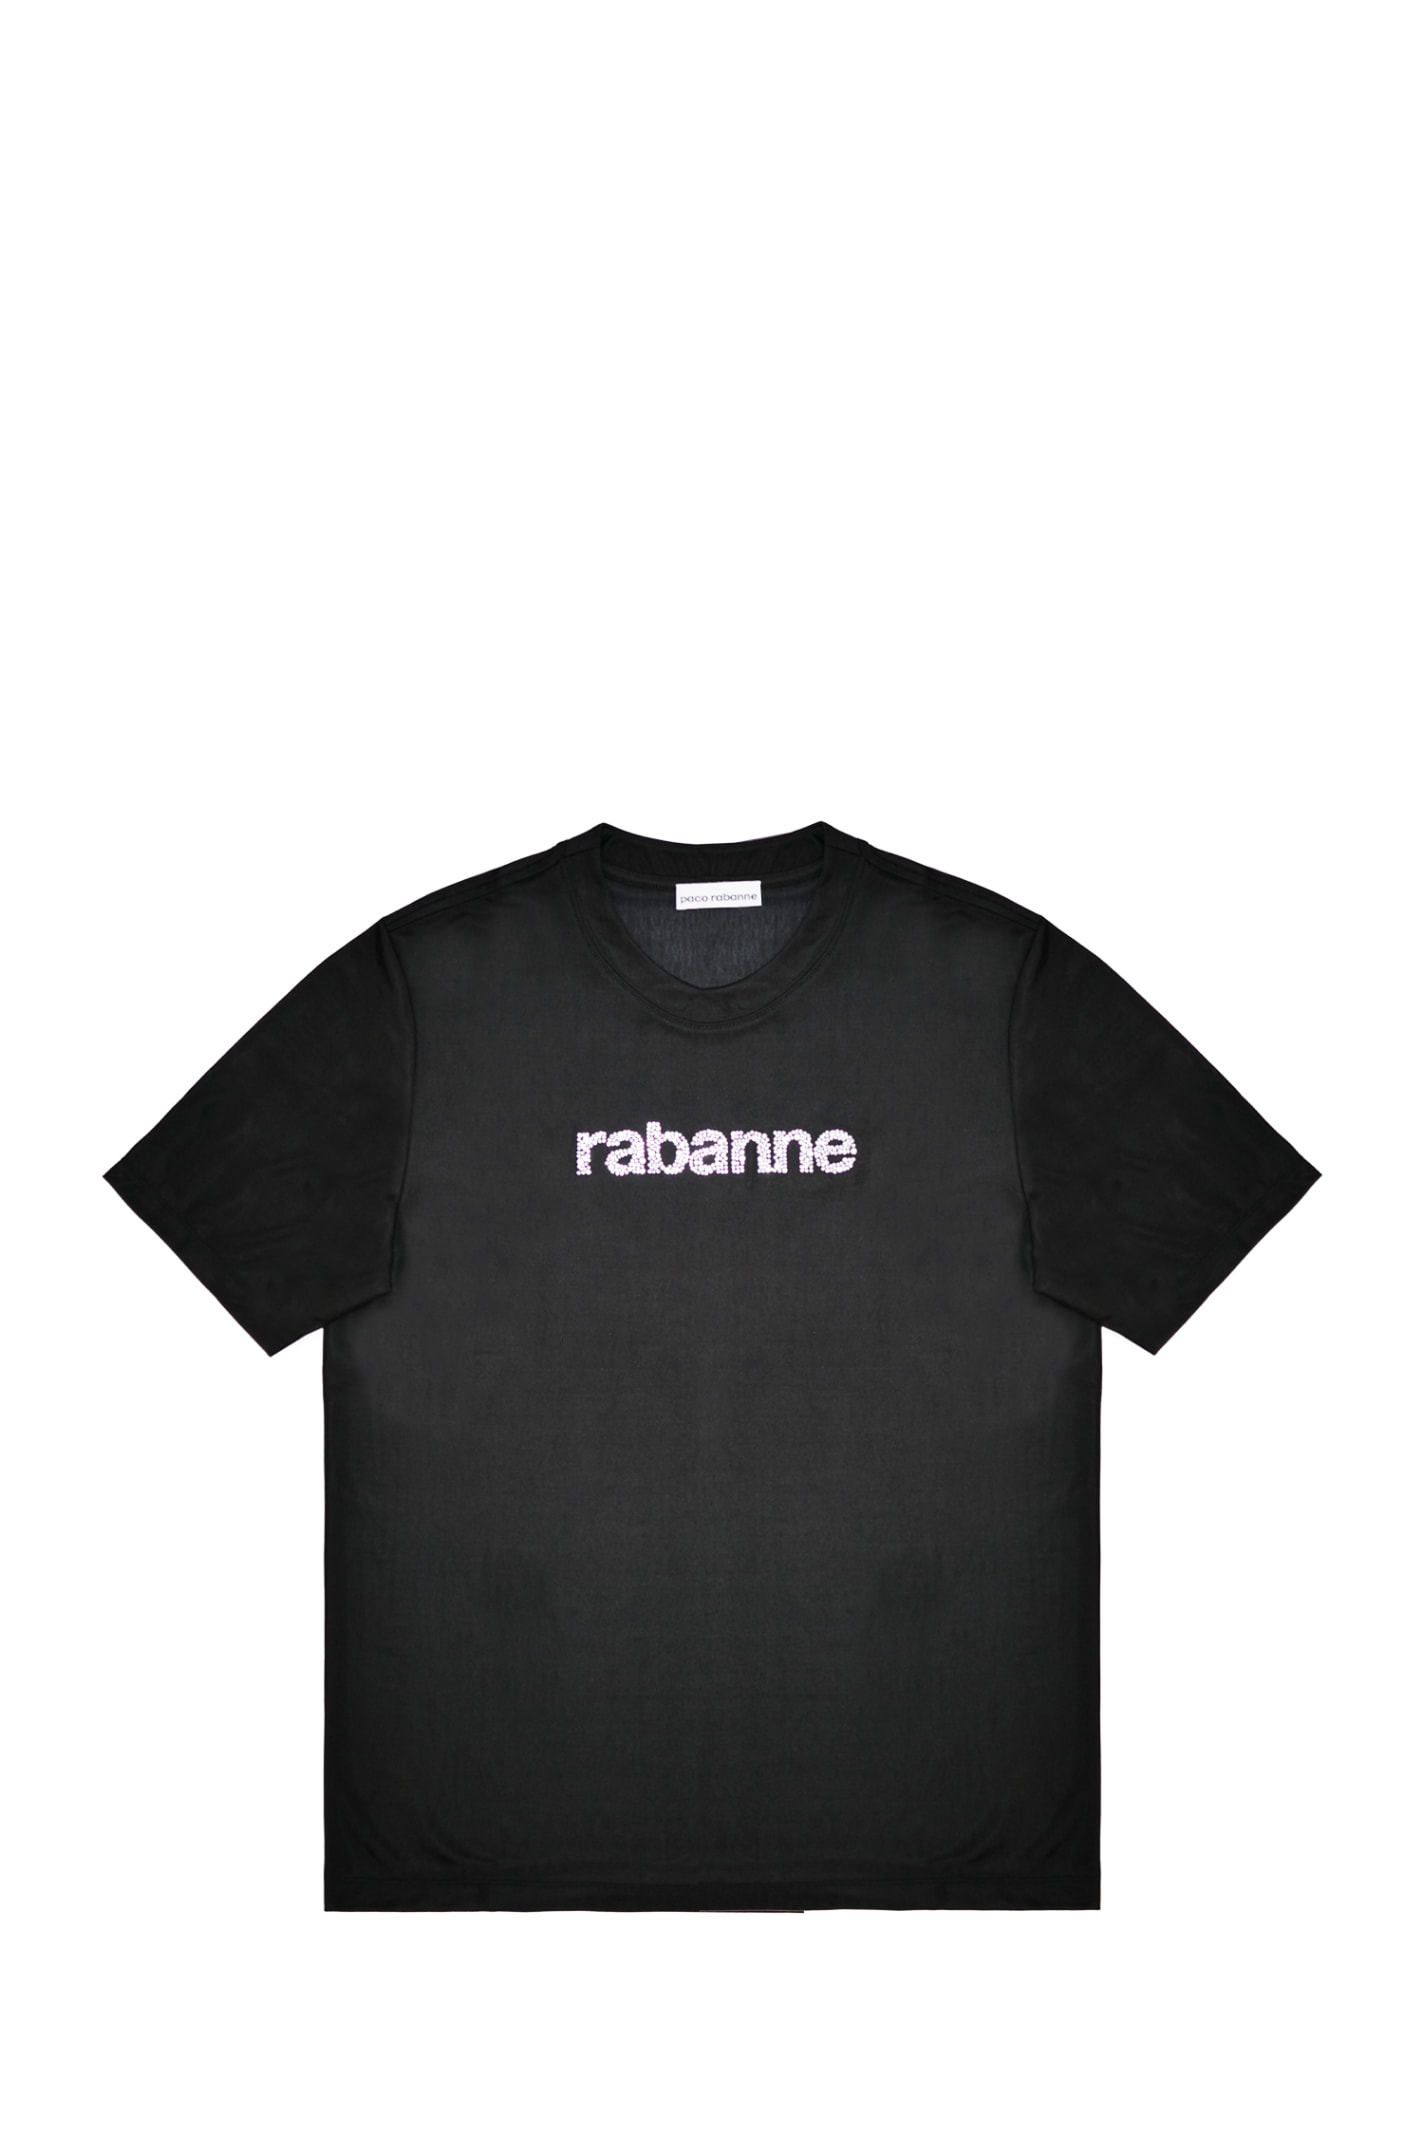 Shop Rabanne T-shirt